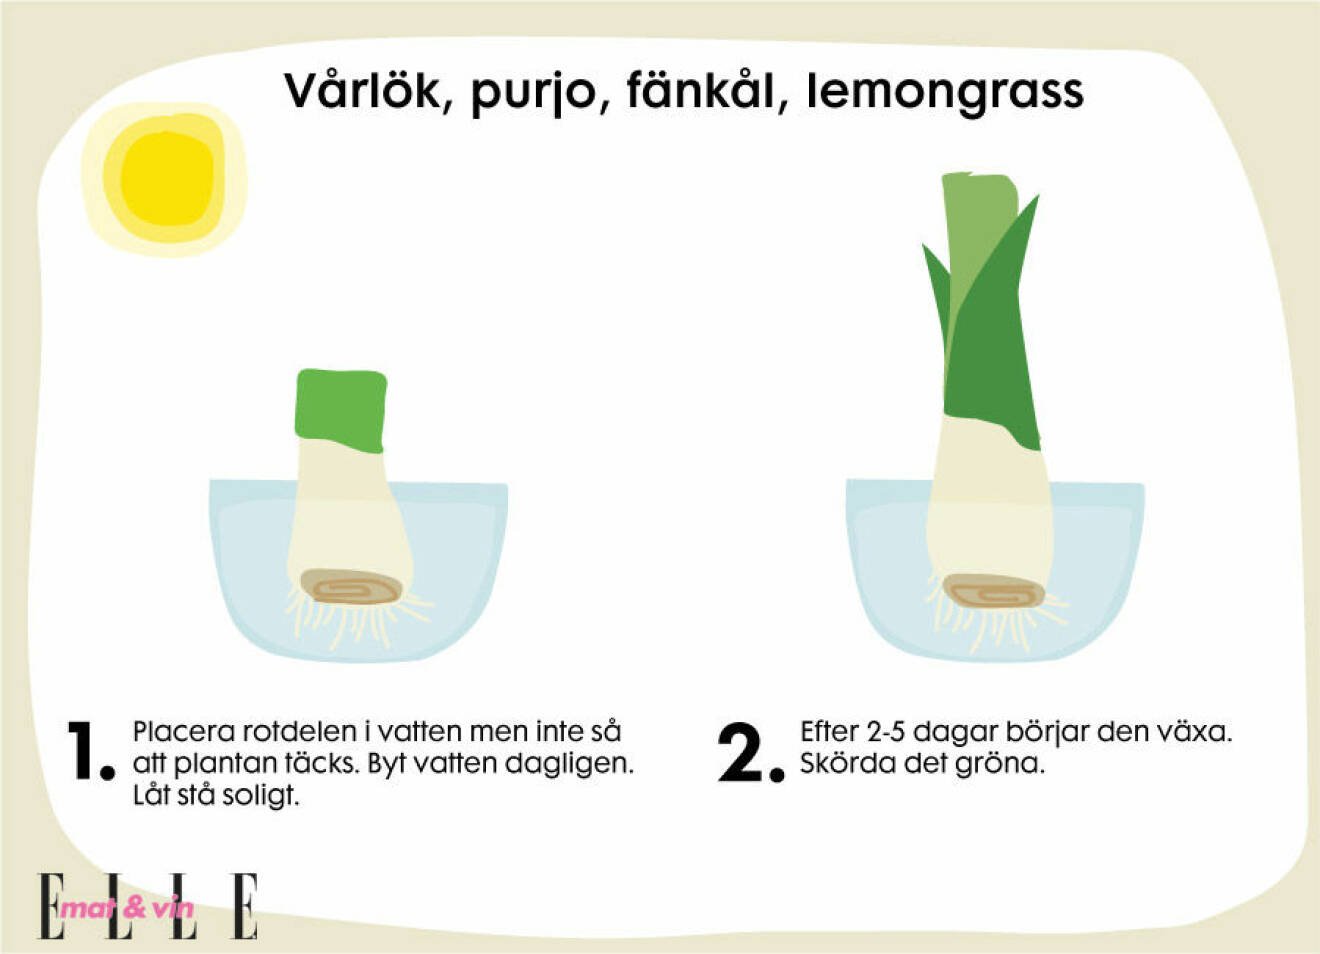 Så här odlar du vårlök, purjo, fänkål och lemongrass hemma.